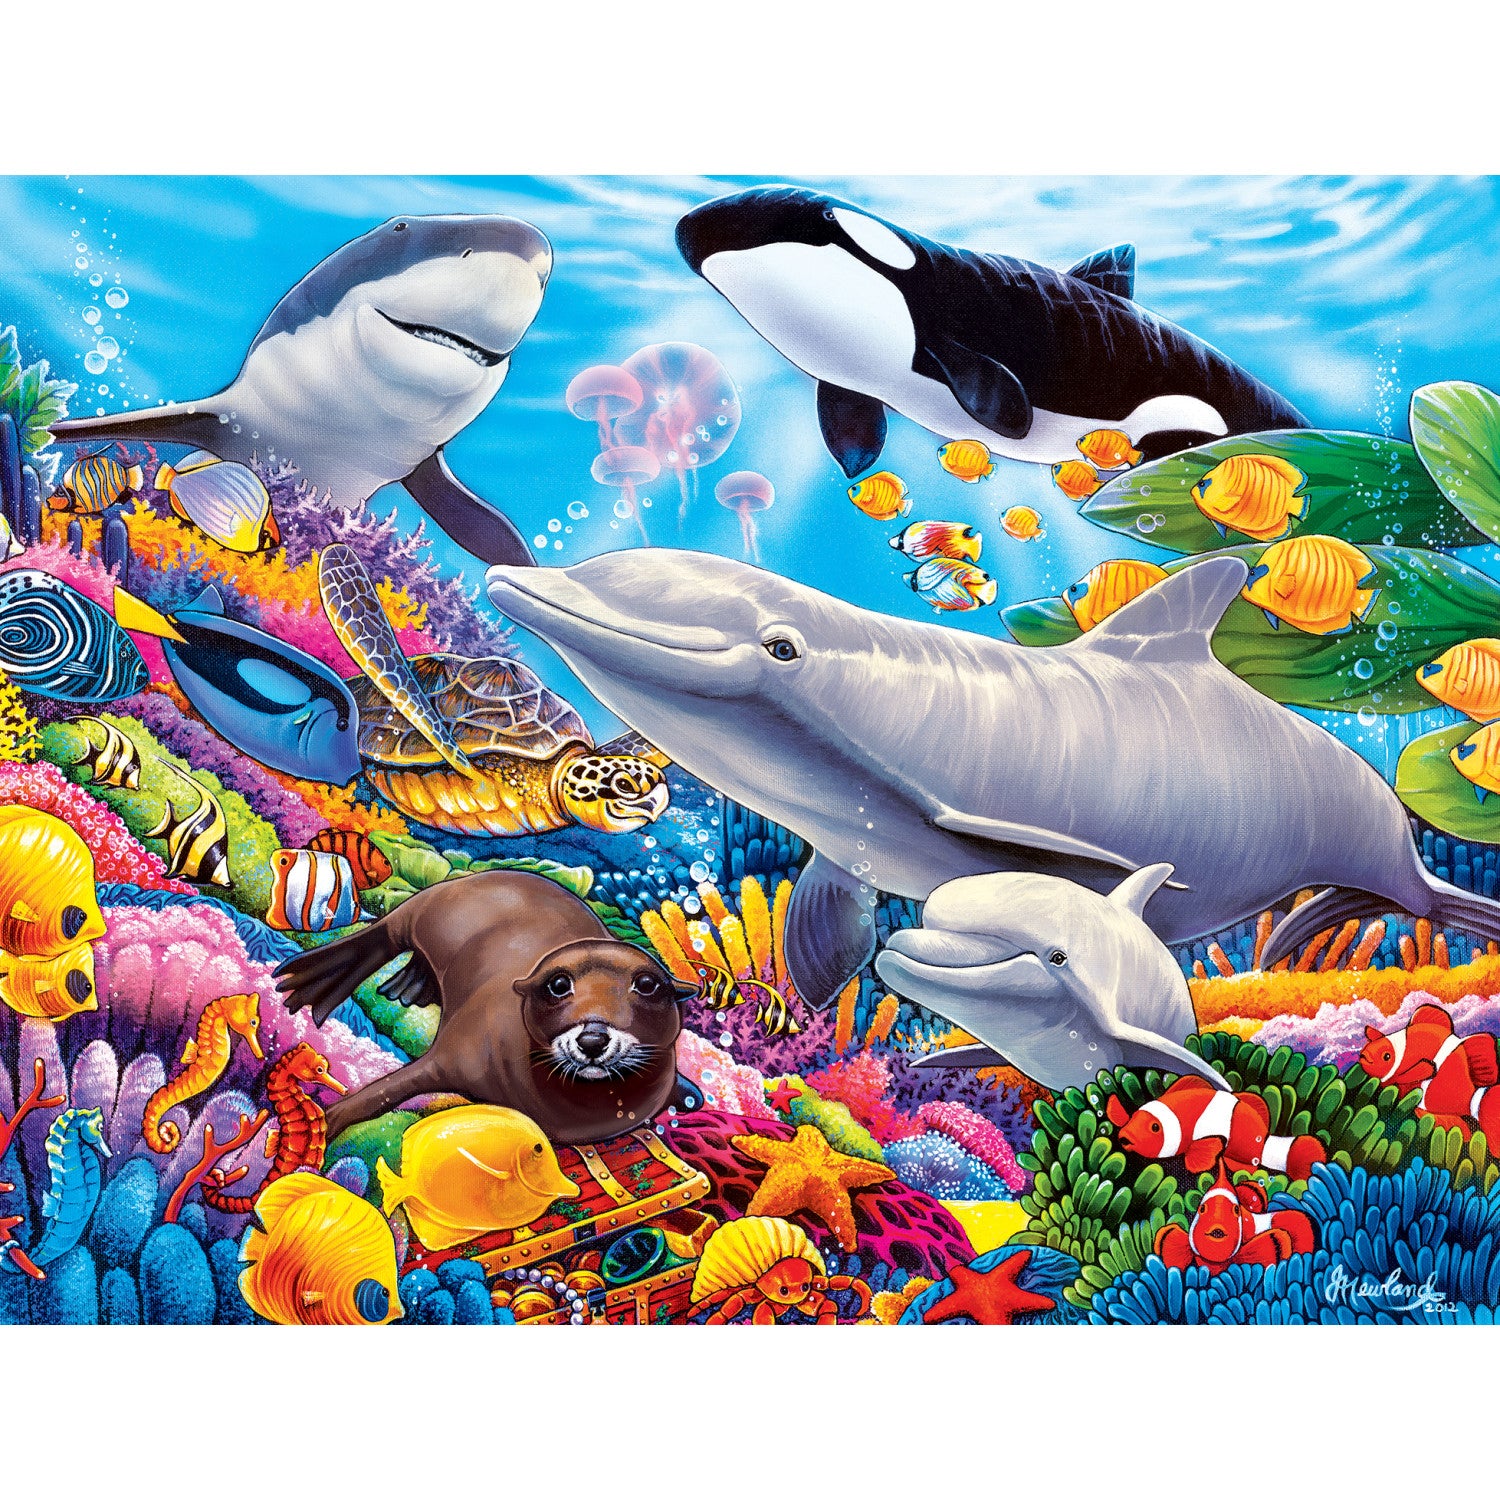 World of Animals - Undersea Friends 100 Piece Kids Puzzle